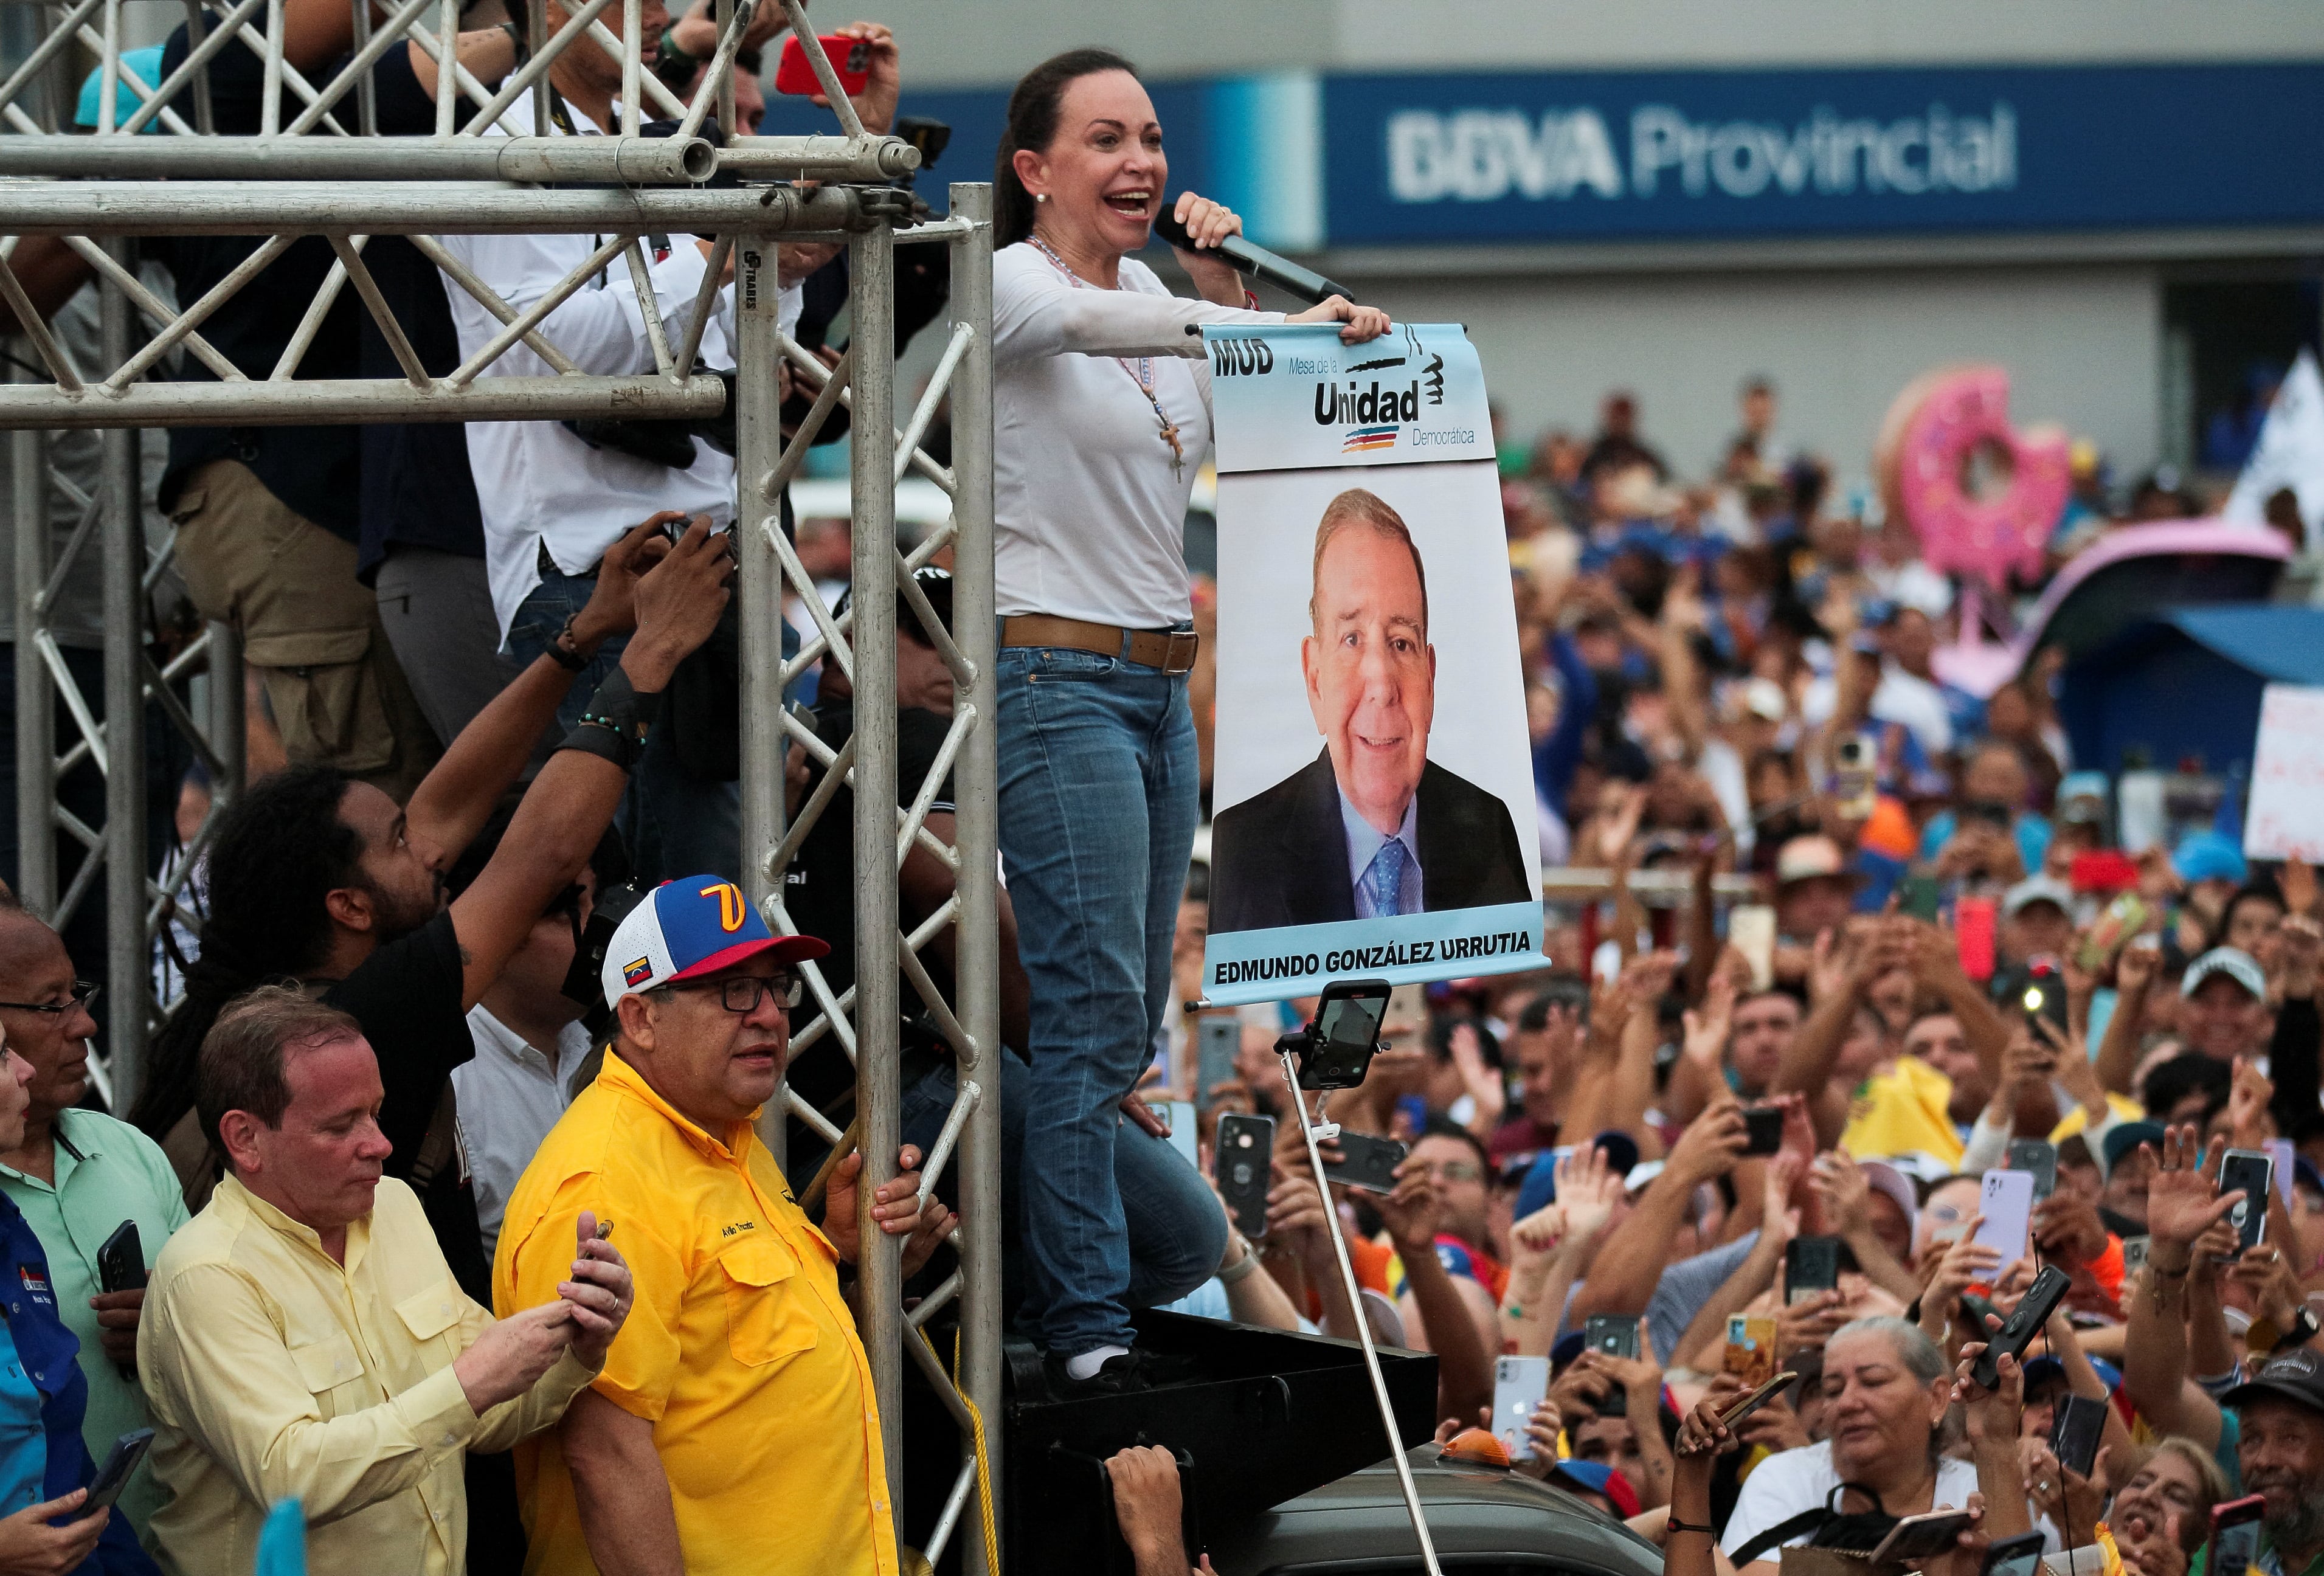 La líder opositora venezolana María Corina Machado se dirige a una multitud mientras sostiene una pancarta de campaña del candidato presidencial opositor Edmundo González Urrutia durante un mitin en Maracaibo (REUTERS/Isaac Urrutia)